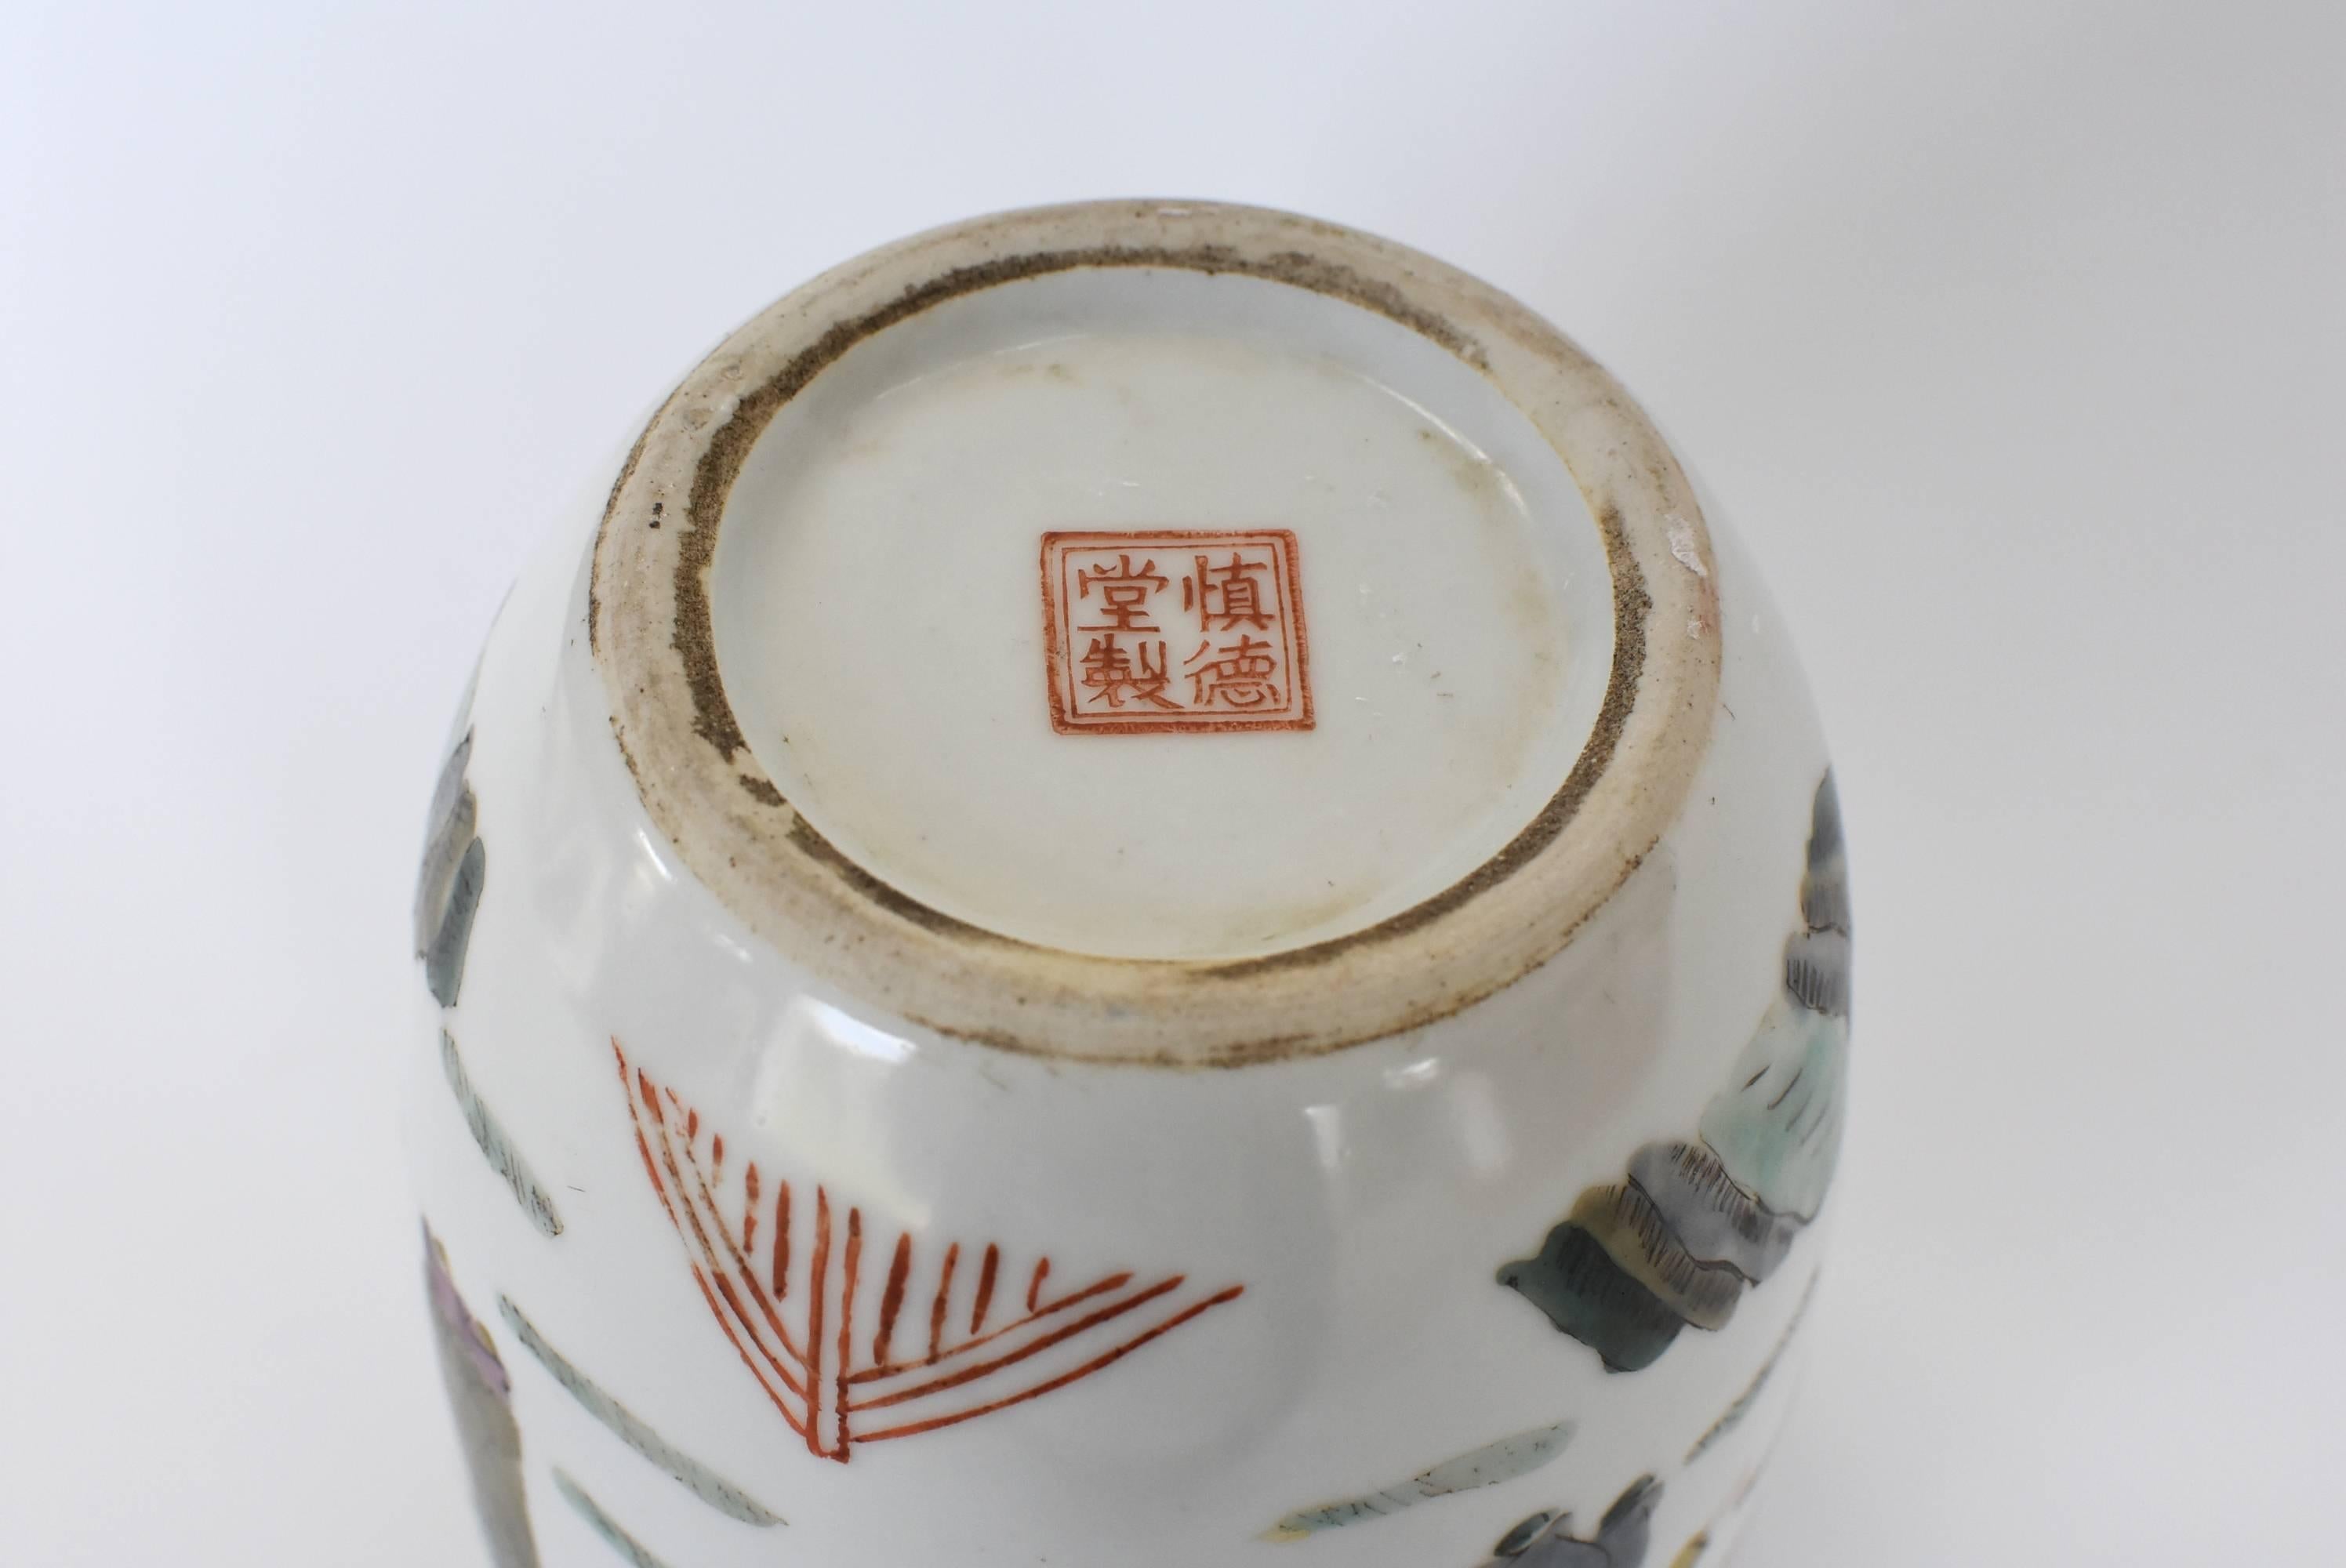 Chinese Porcelain Vase, Republic Era, with Maker's Mark 9